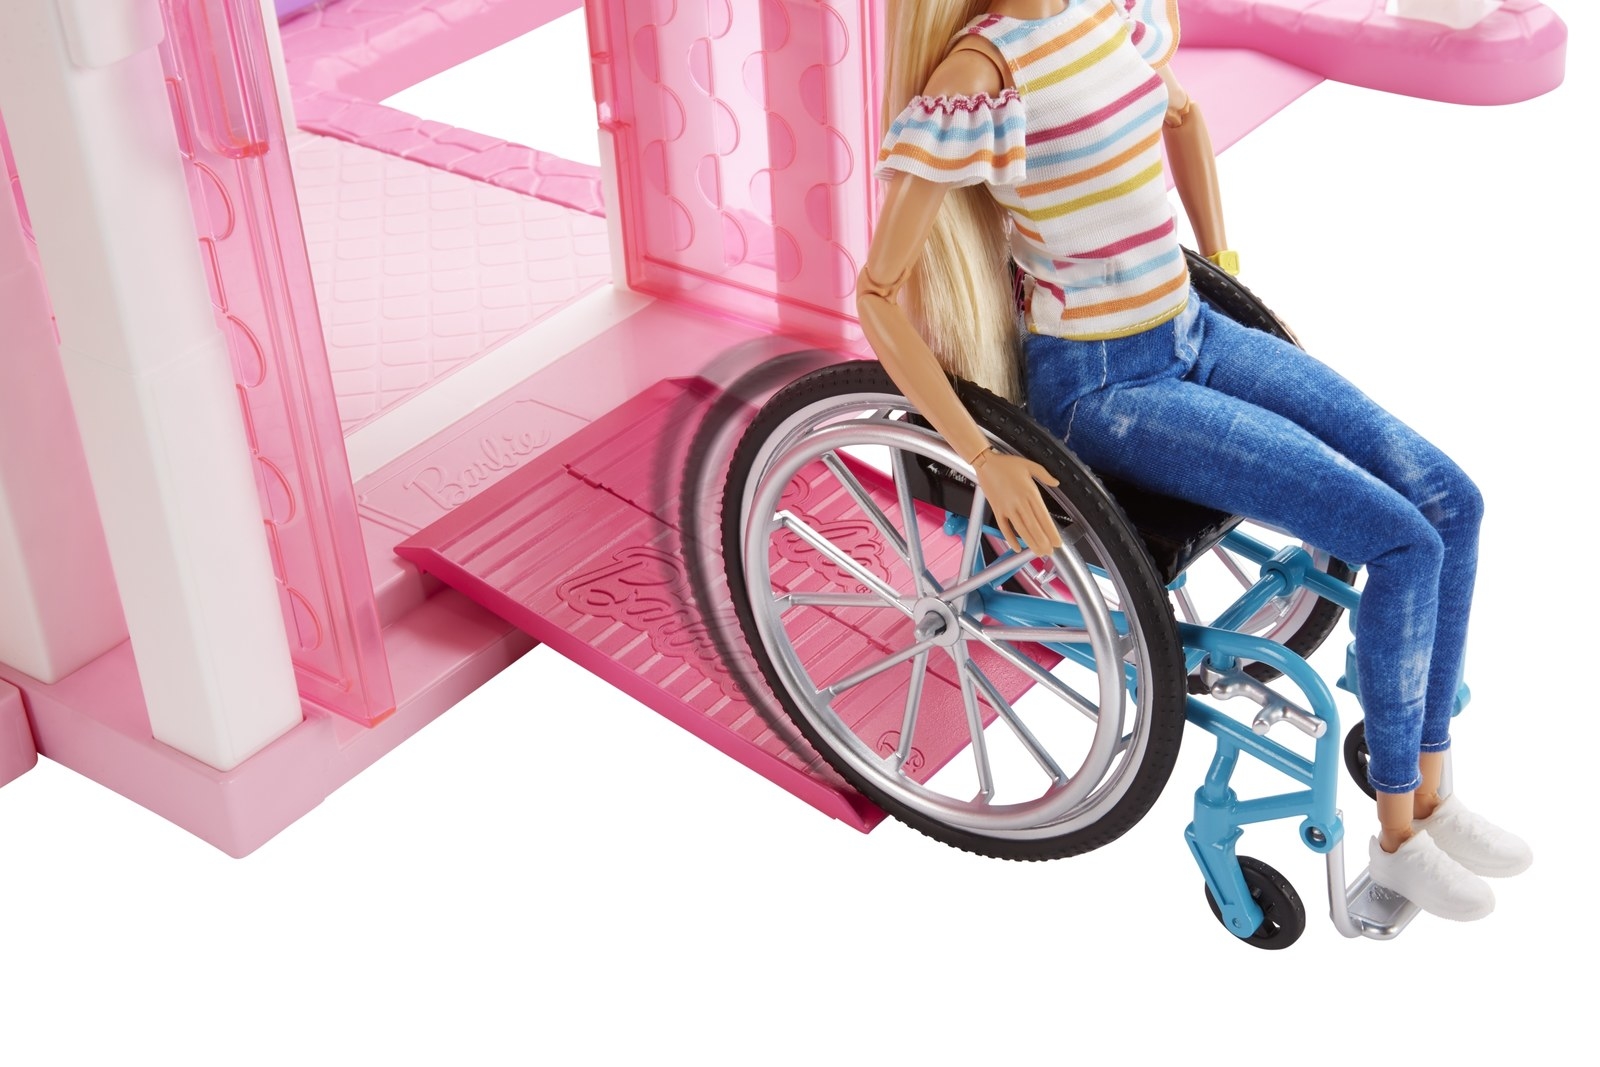 車椅子のバービー人形が登場 ドールハウスへのスロープもセット